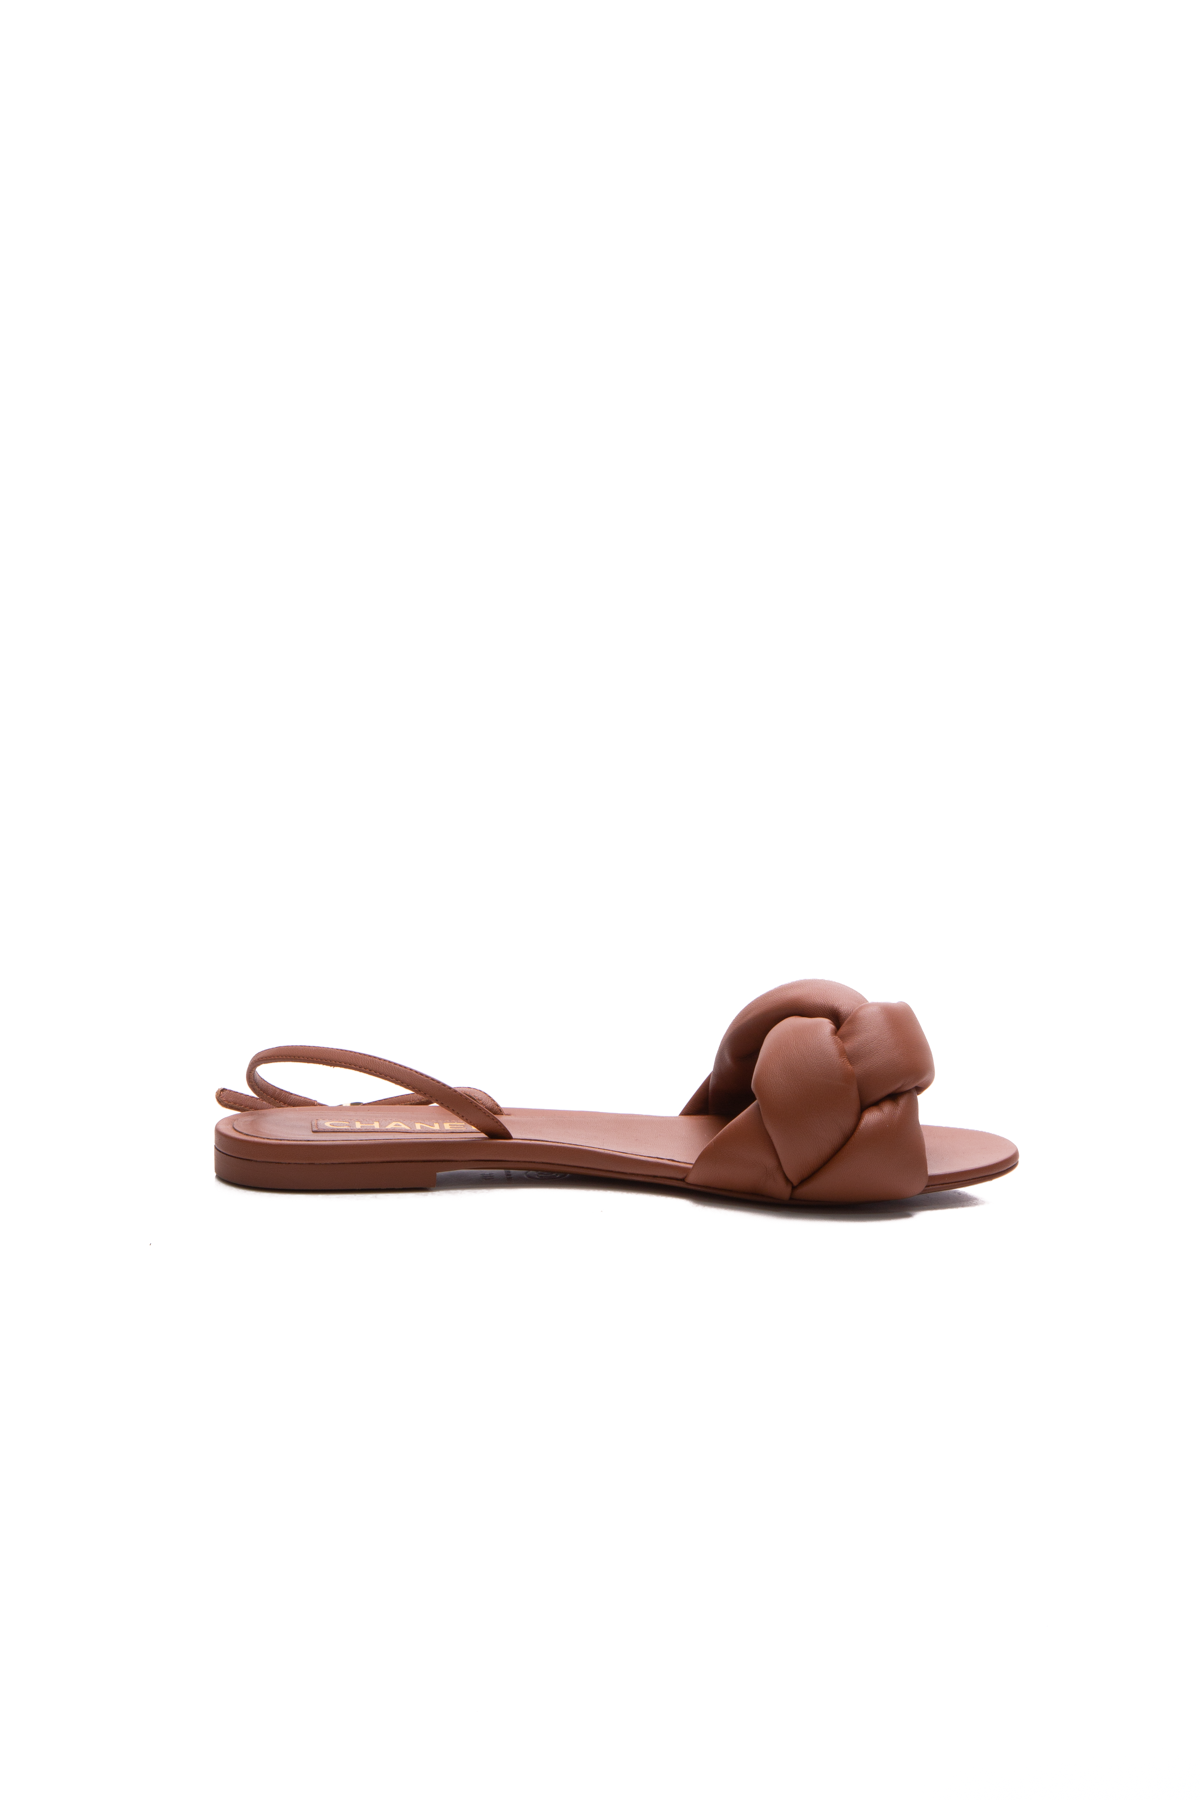 Shop Louis Vuitton Pool Pillow Flat Comfort Sandals by KICKSSTORE